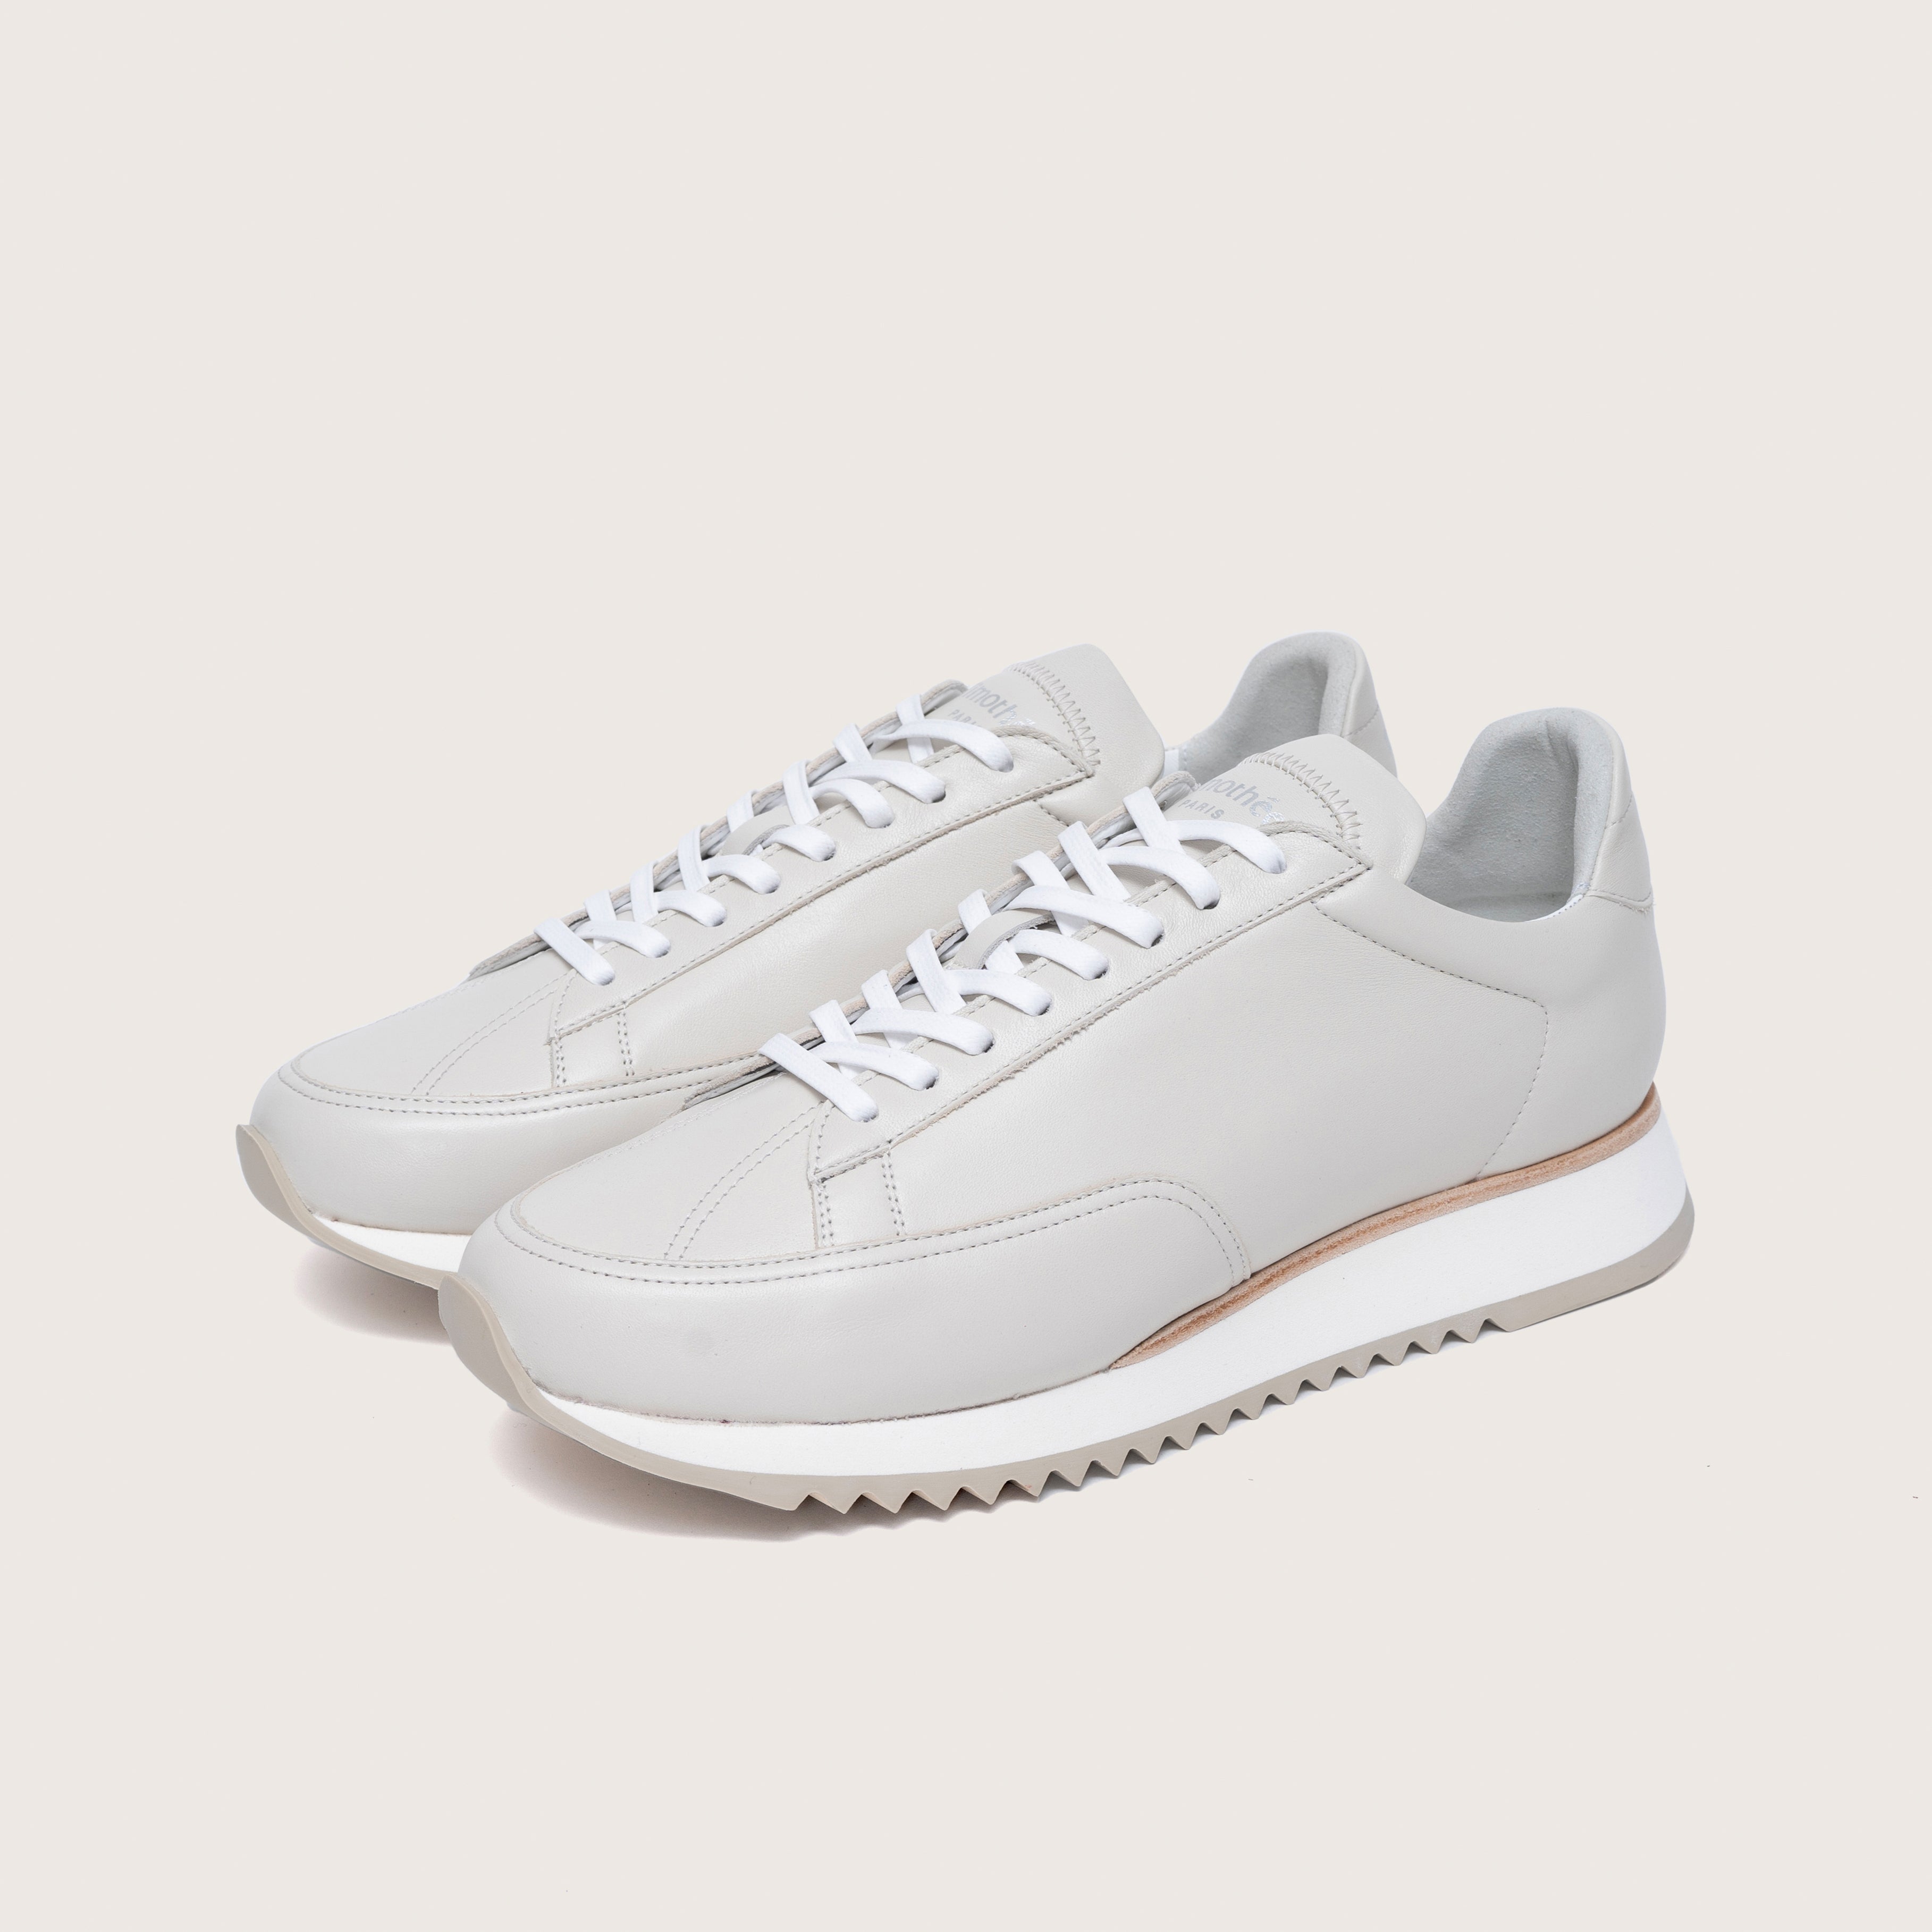 Timothée Paris CABOURG CLOUD Cotton White Sneakers